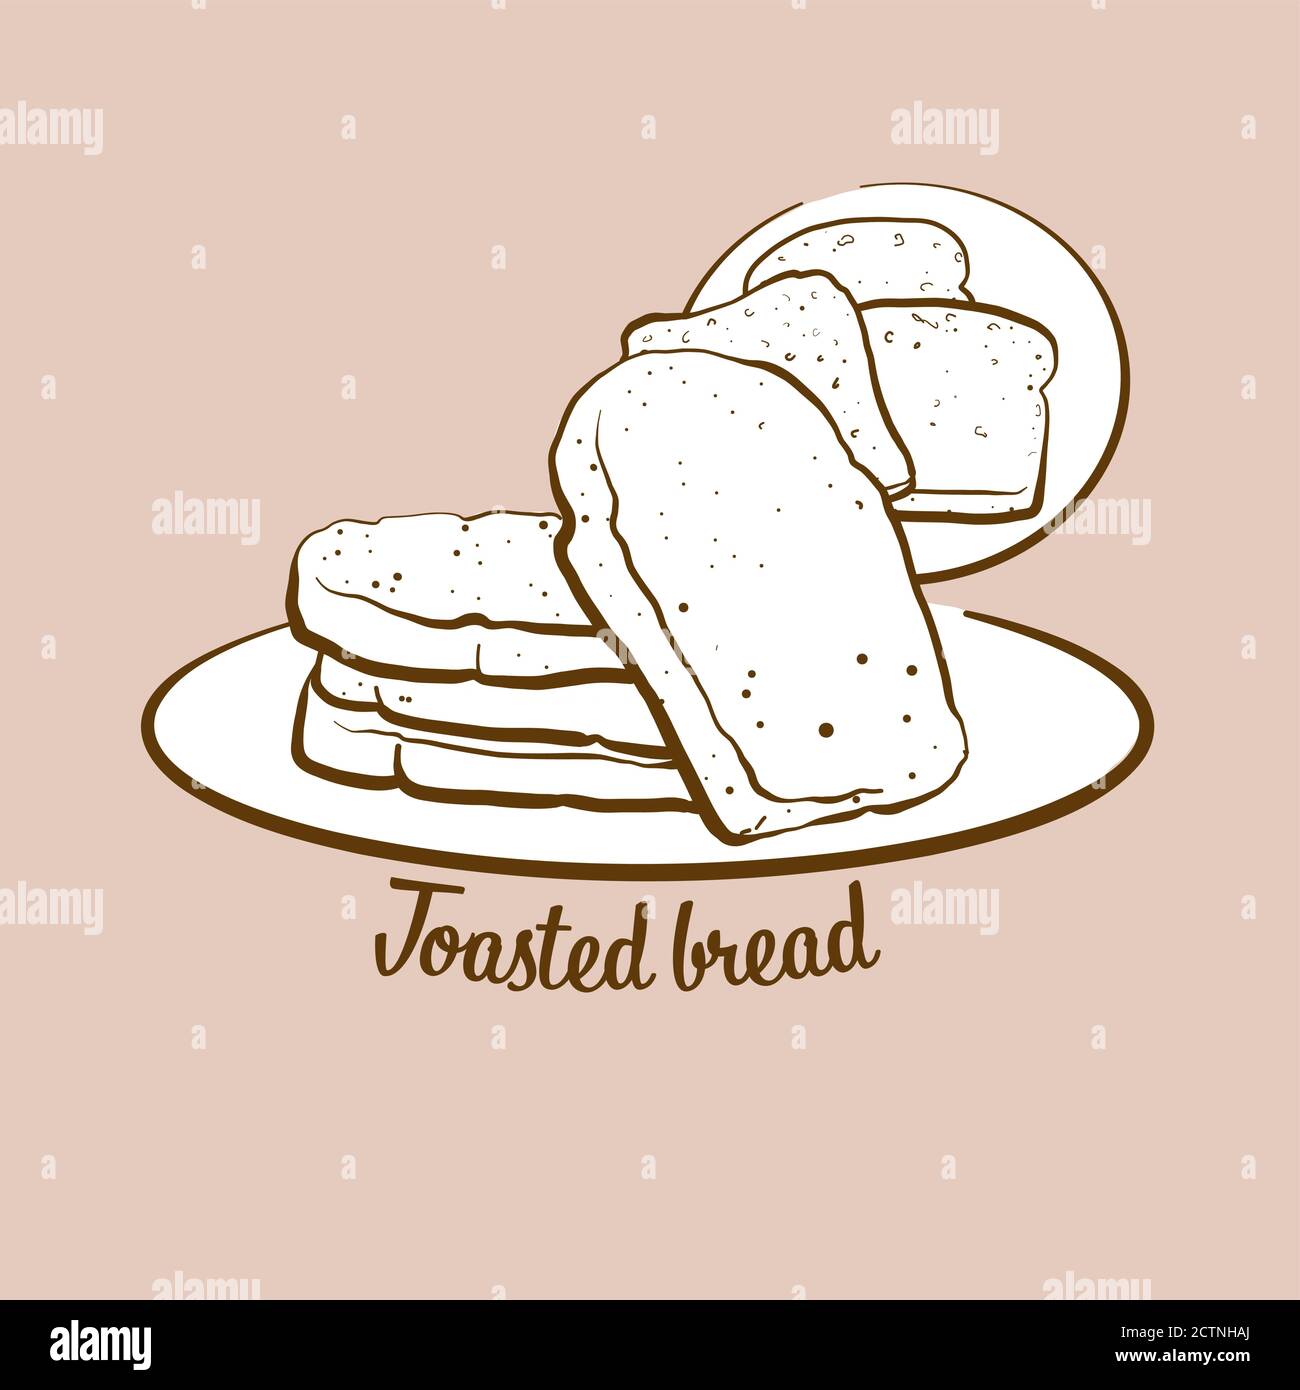 Illustrazione del pane tostato preparato a mano. Toast, di solito conosciuto in Gran Bretagna. Serie di disegni vettoriali. Illustrazione Vettoriale